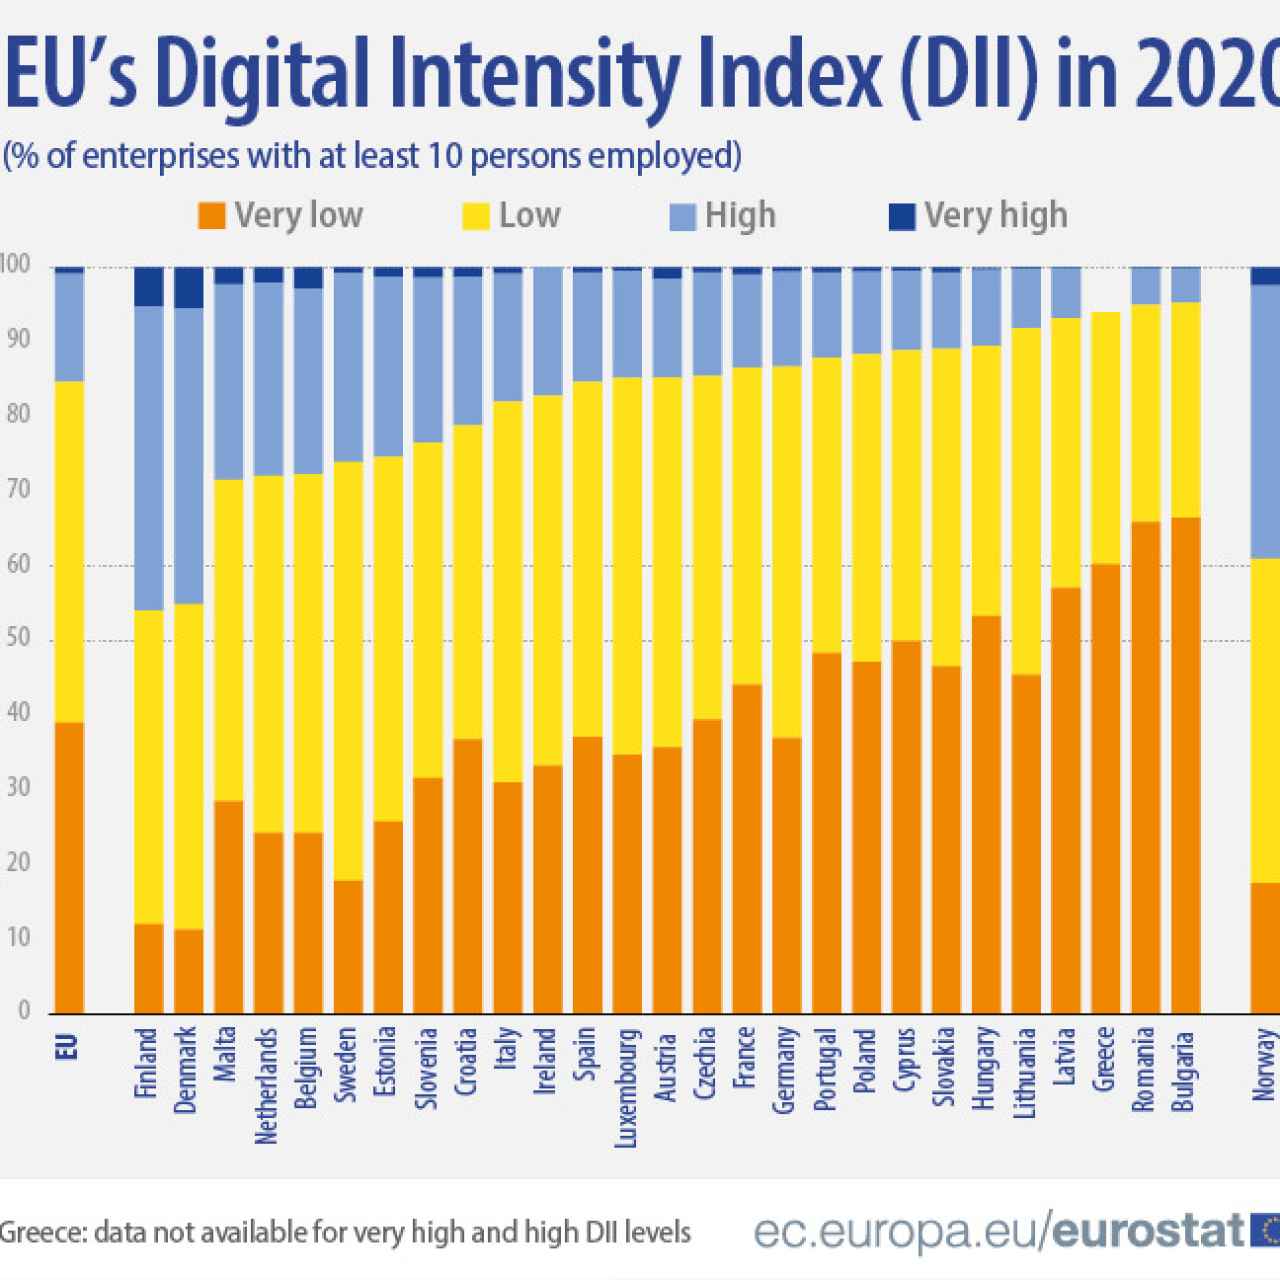 Comparativa de los países europeos en función del grado de digitalización de sus empresas. Fuente: Eurostat.